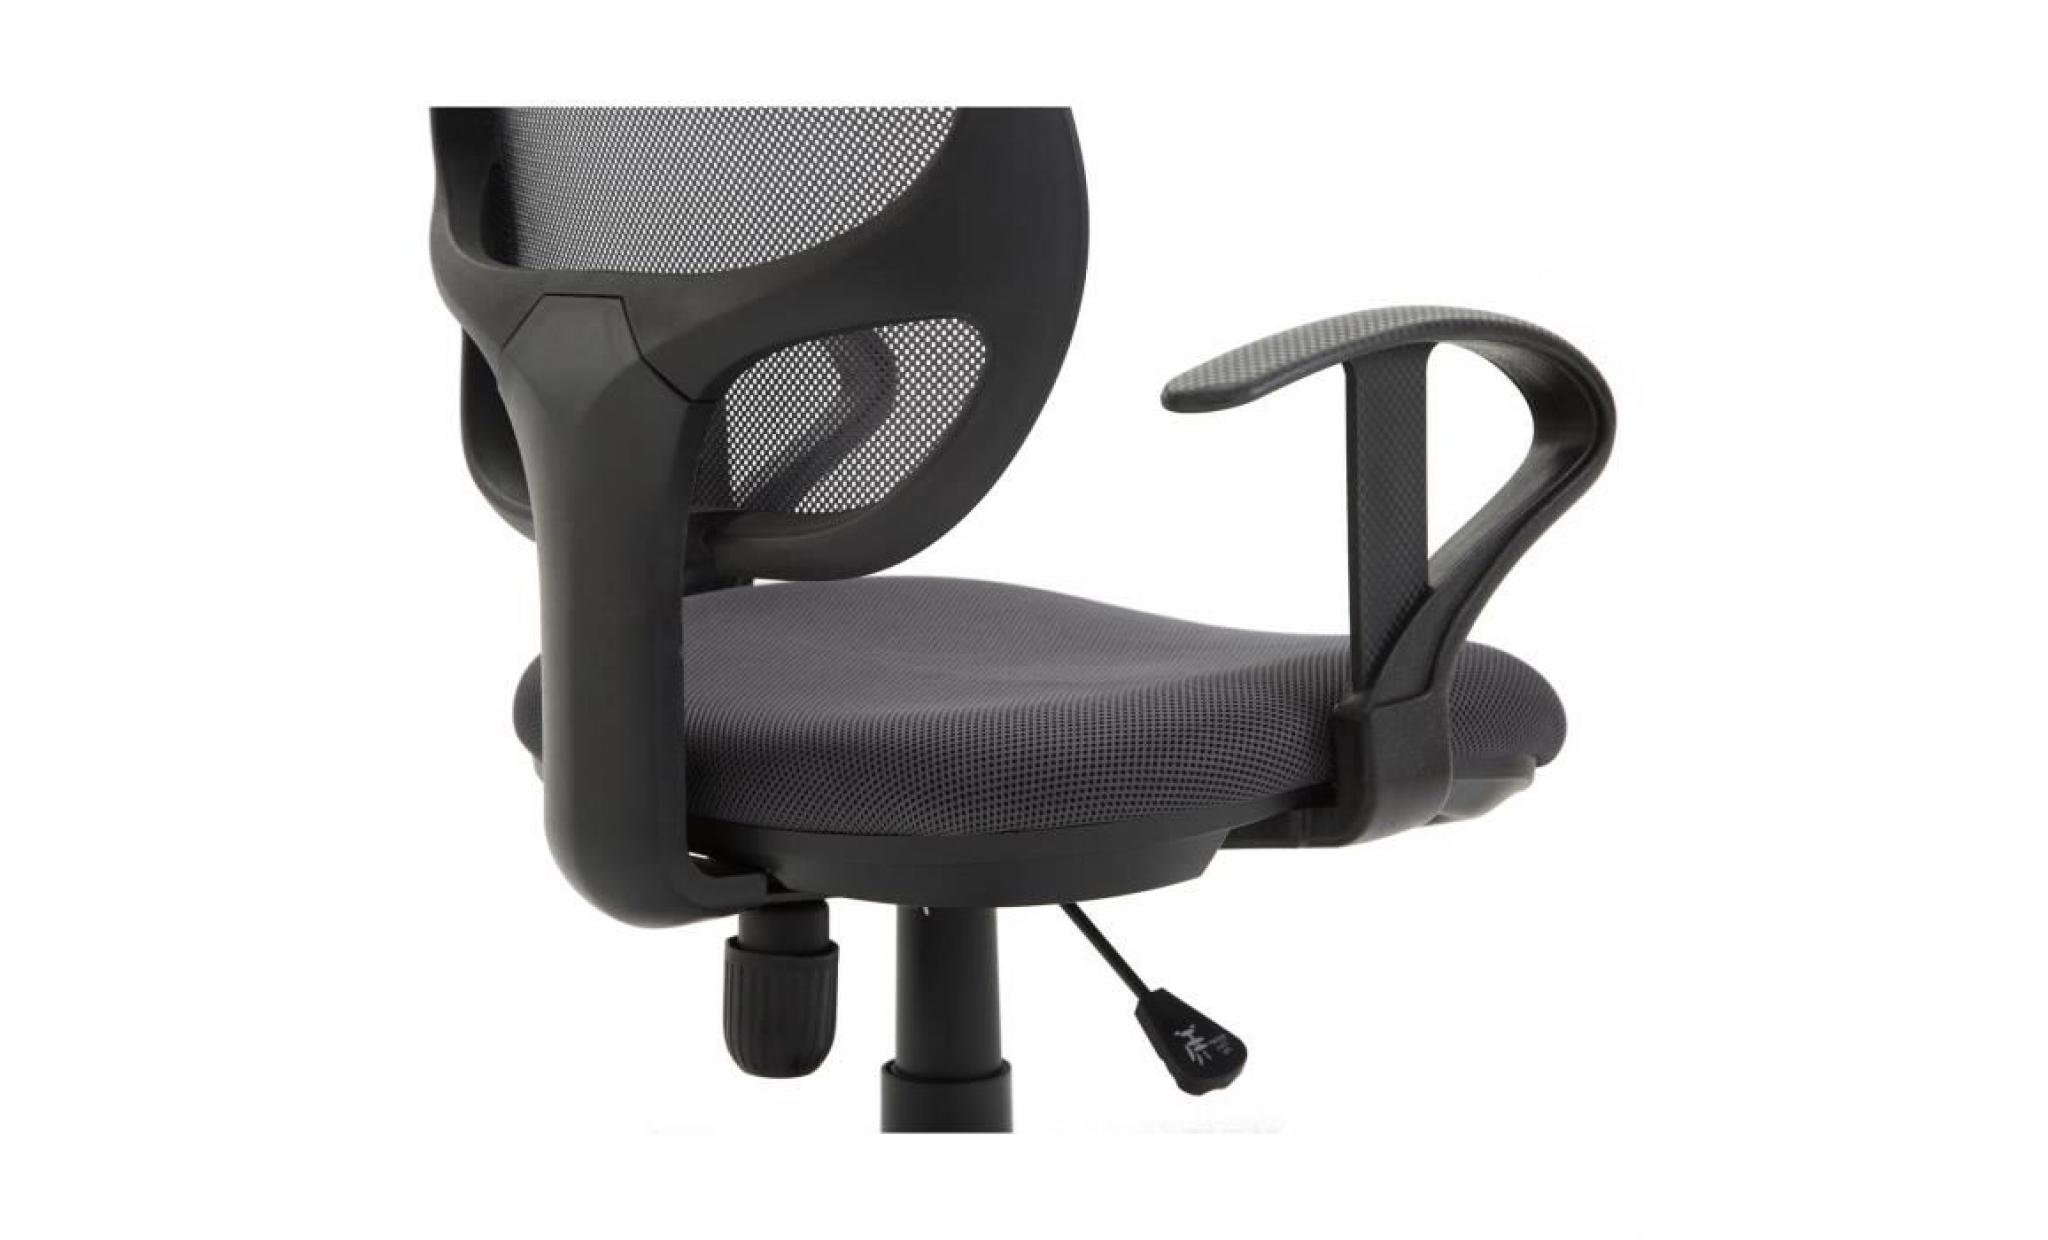 chaise de bureau pour enfant cool fauteuil pivotant ergonomique avec accoudoirs, siège à roulettes et hauteur réglable, mesh rouge pas cher